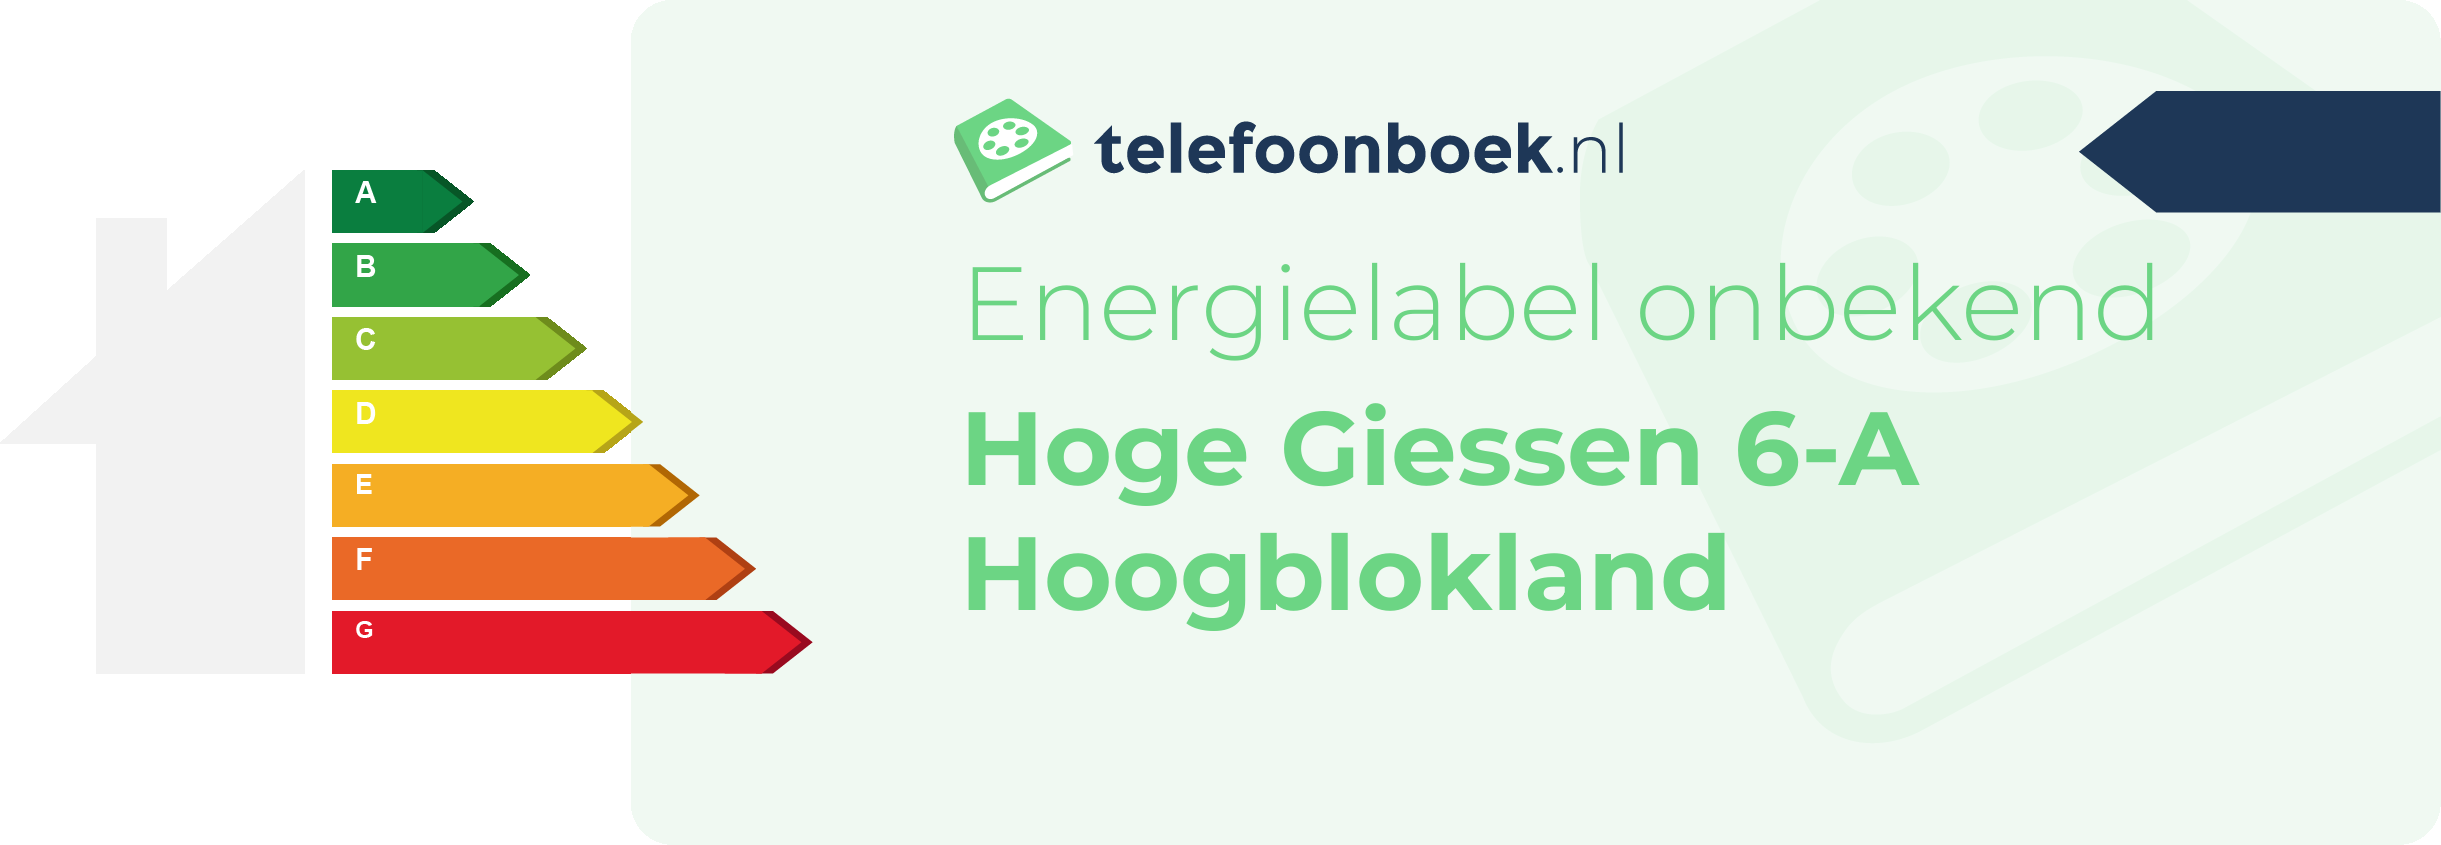 Energielabel Hoge Giessen 6-A Hoogblokland